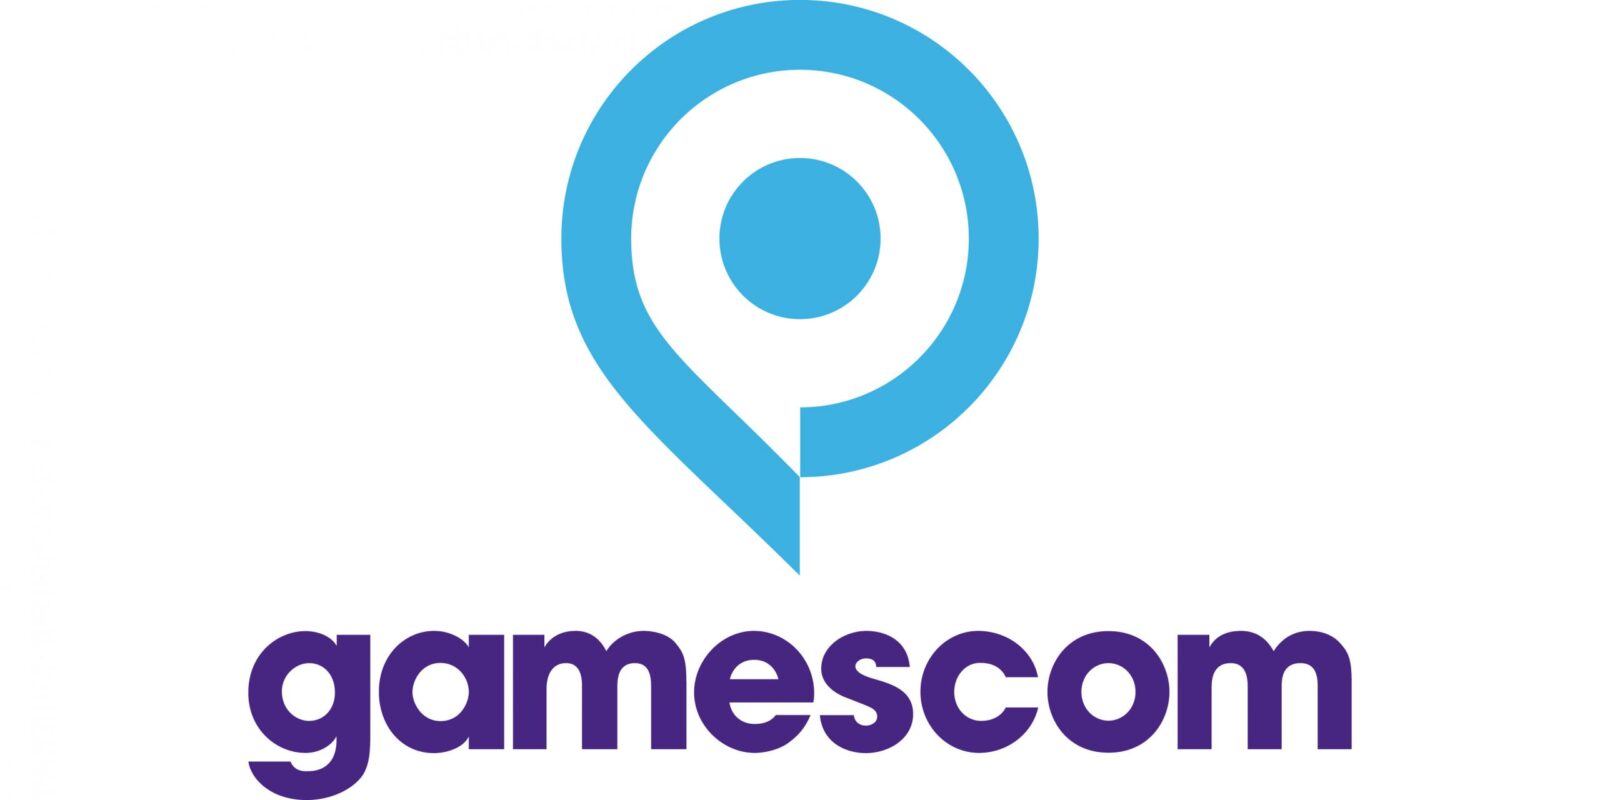 Gamescom Memperlihatkan Daftar Perusahaan Yang Akan Hadir